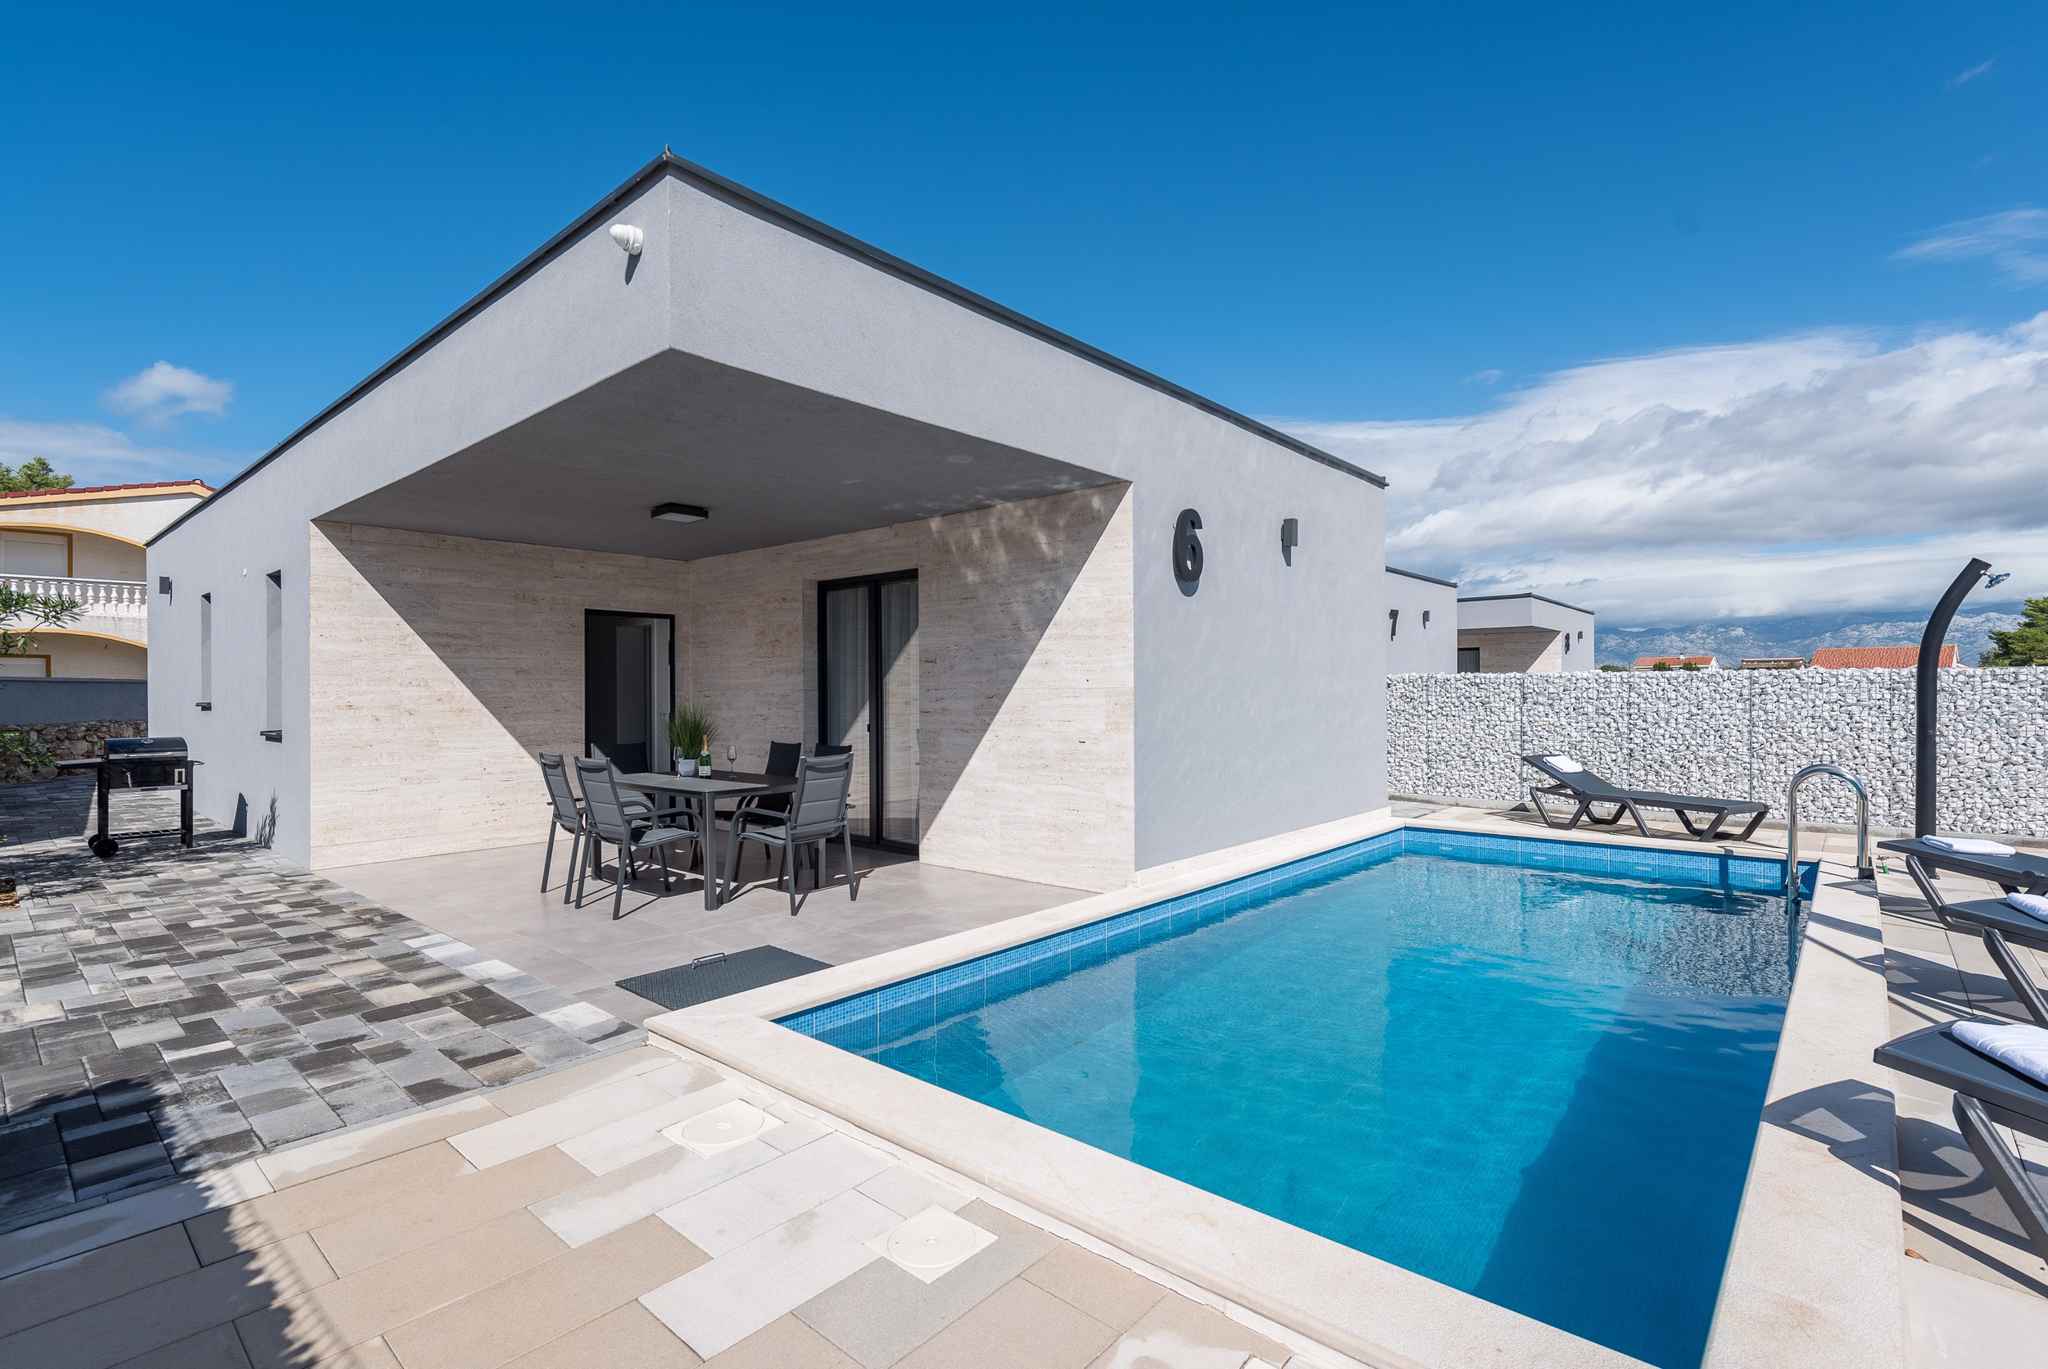 Villa mit 4 Sternen mit Pool in einem Luxusresort  Ferienhaus in Europa